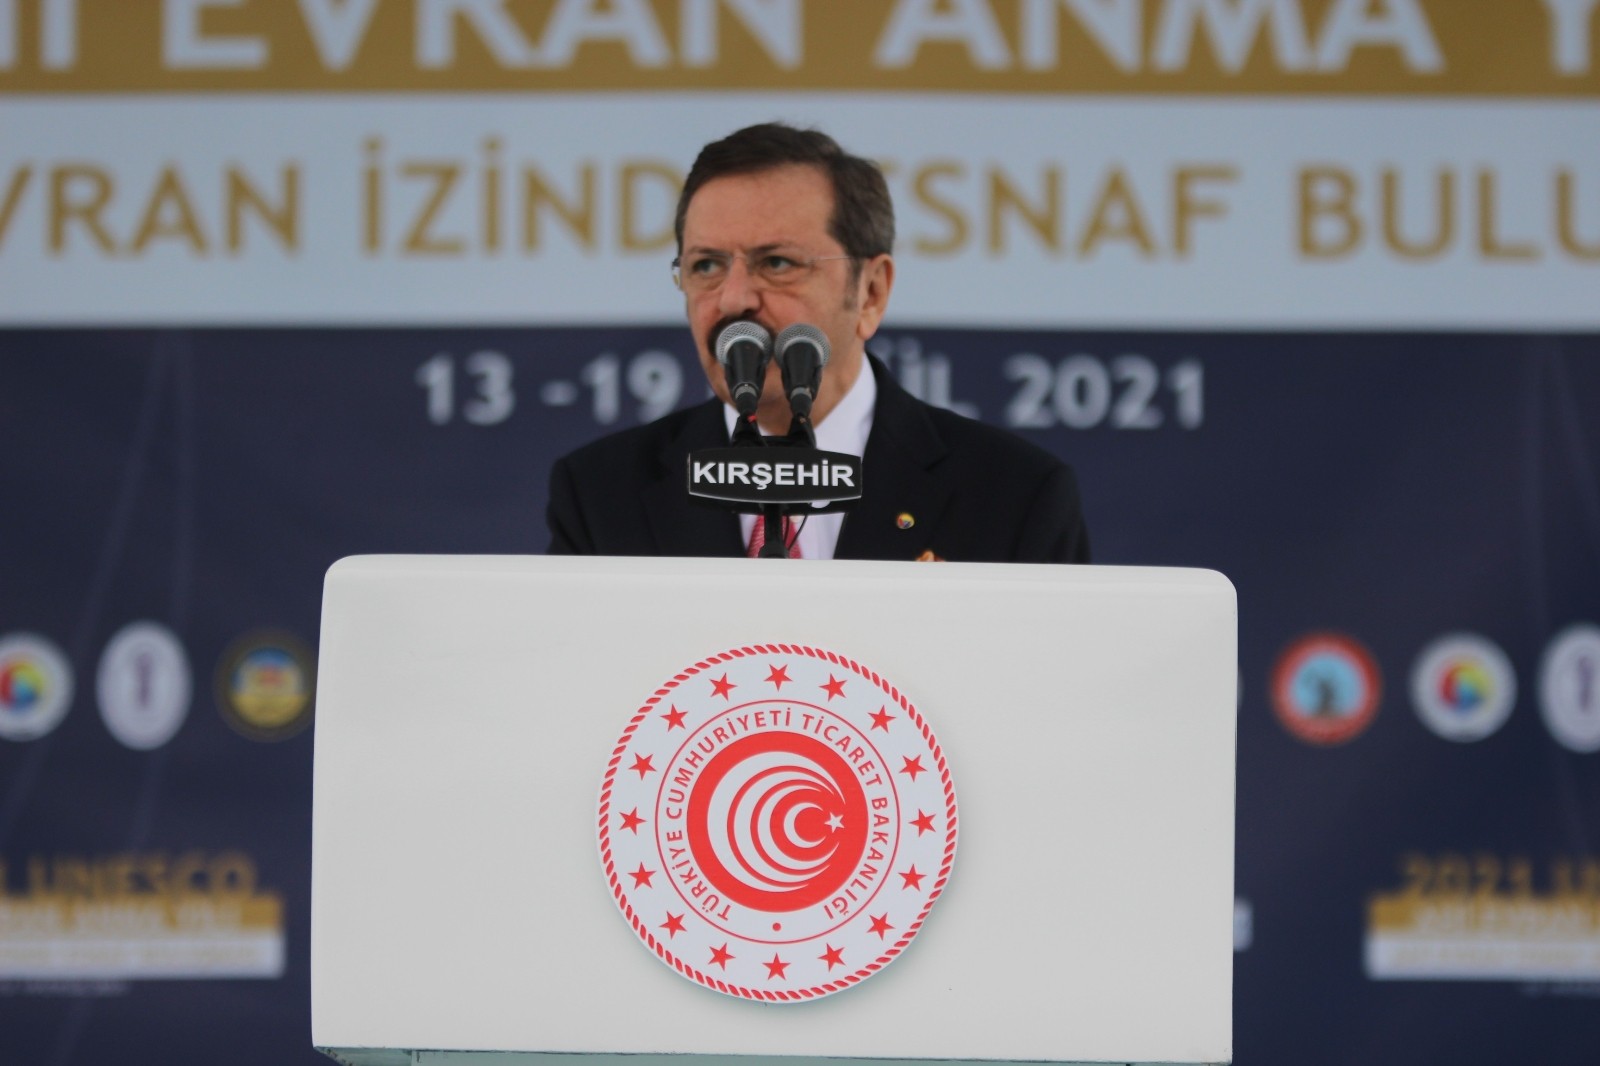 TOBB Başkanı Hisarcıklıoğlu: “Daha müreffeh bir Türkiye için hep beraber kenetlenmeliyiz” #kirsehir